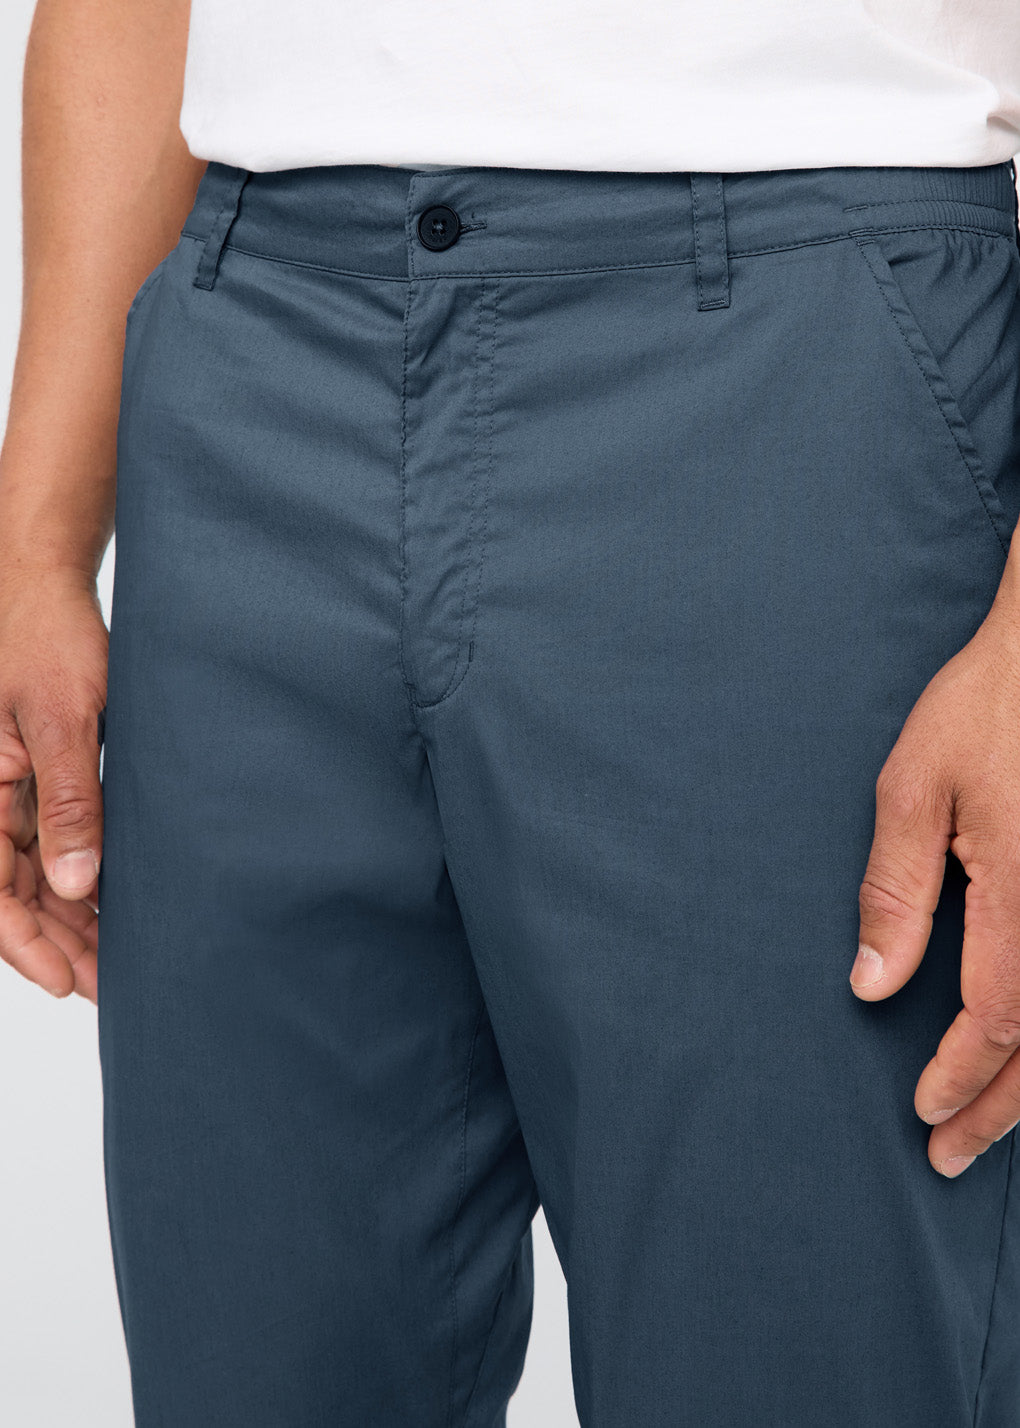 mens sail lightweight summer travel pants front waistband detail